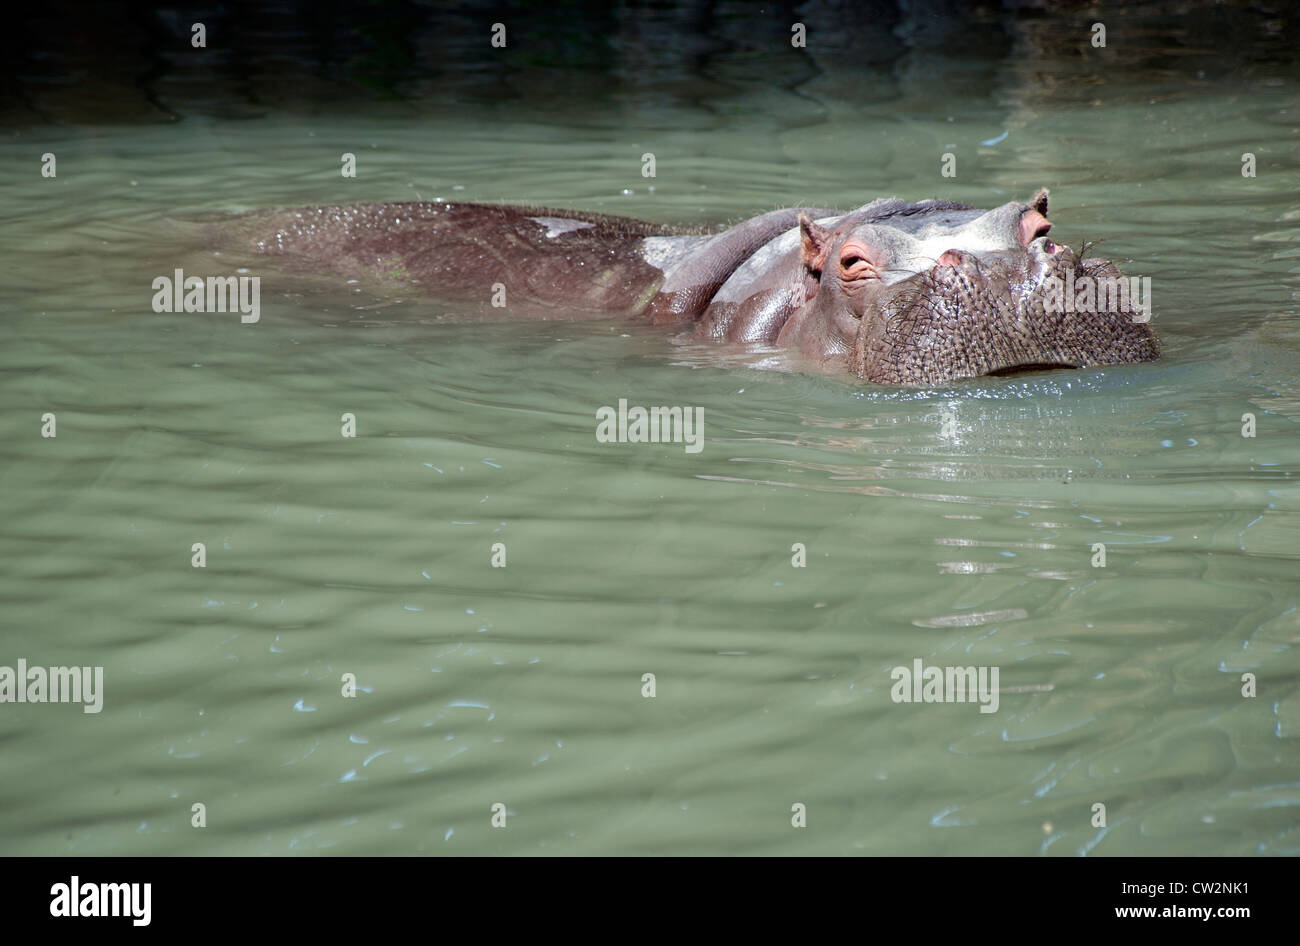 Les hippopotames se baignant dans un lac Banque D'Images